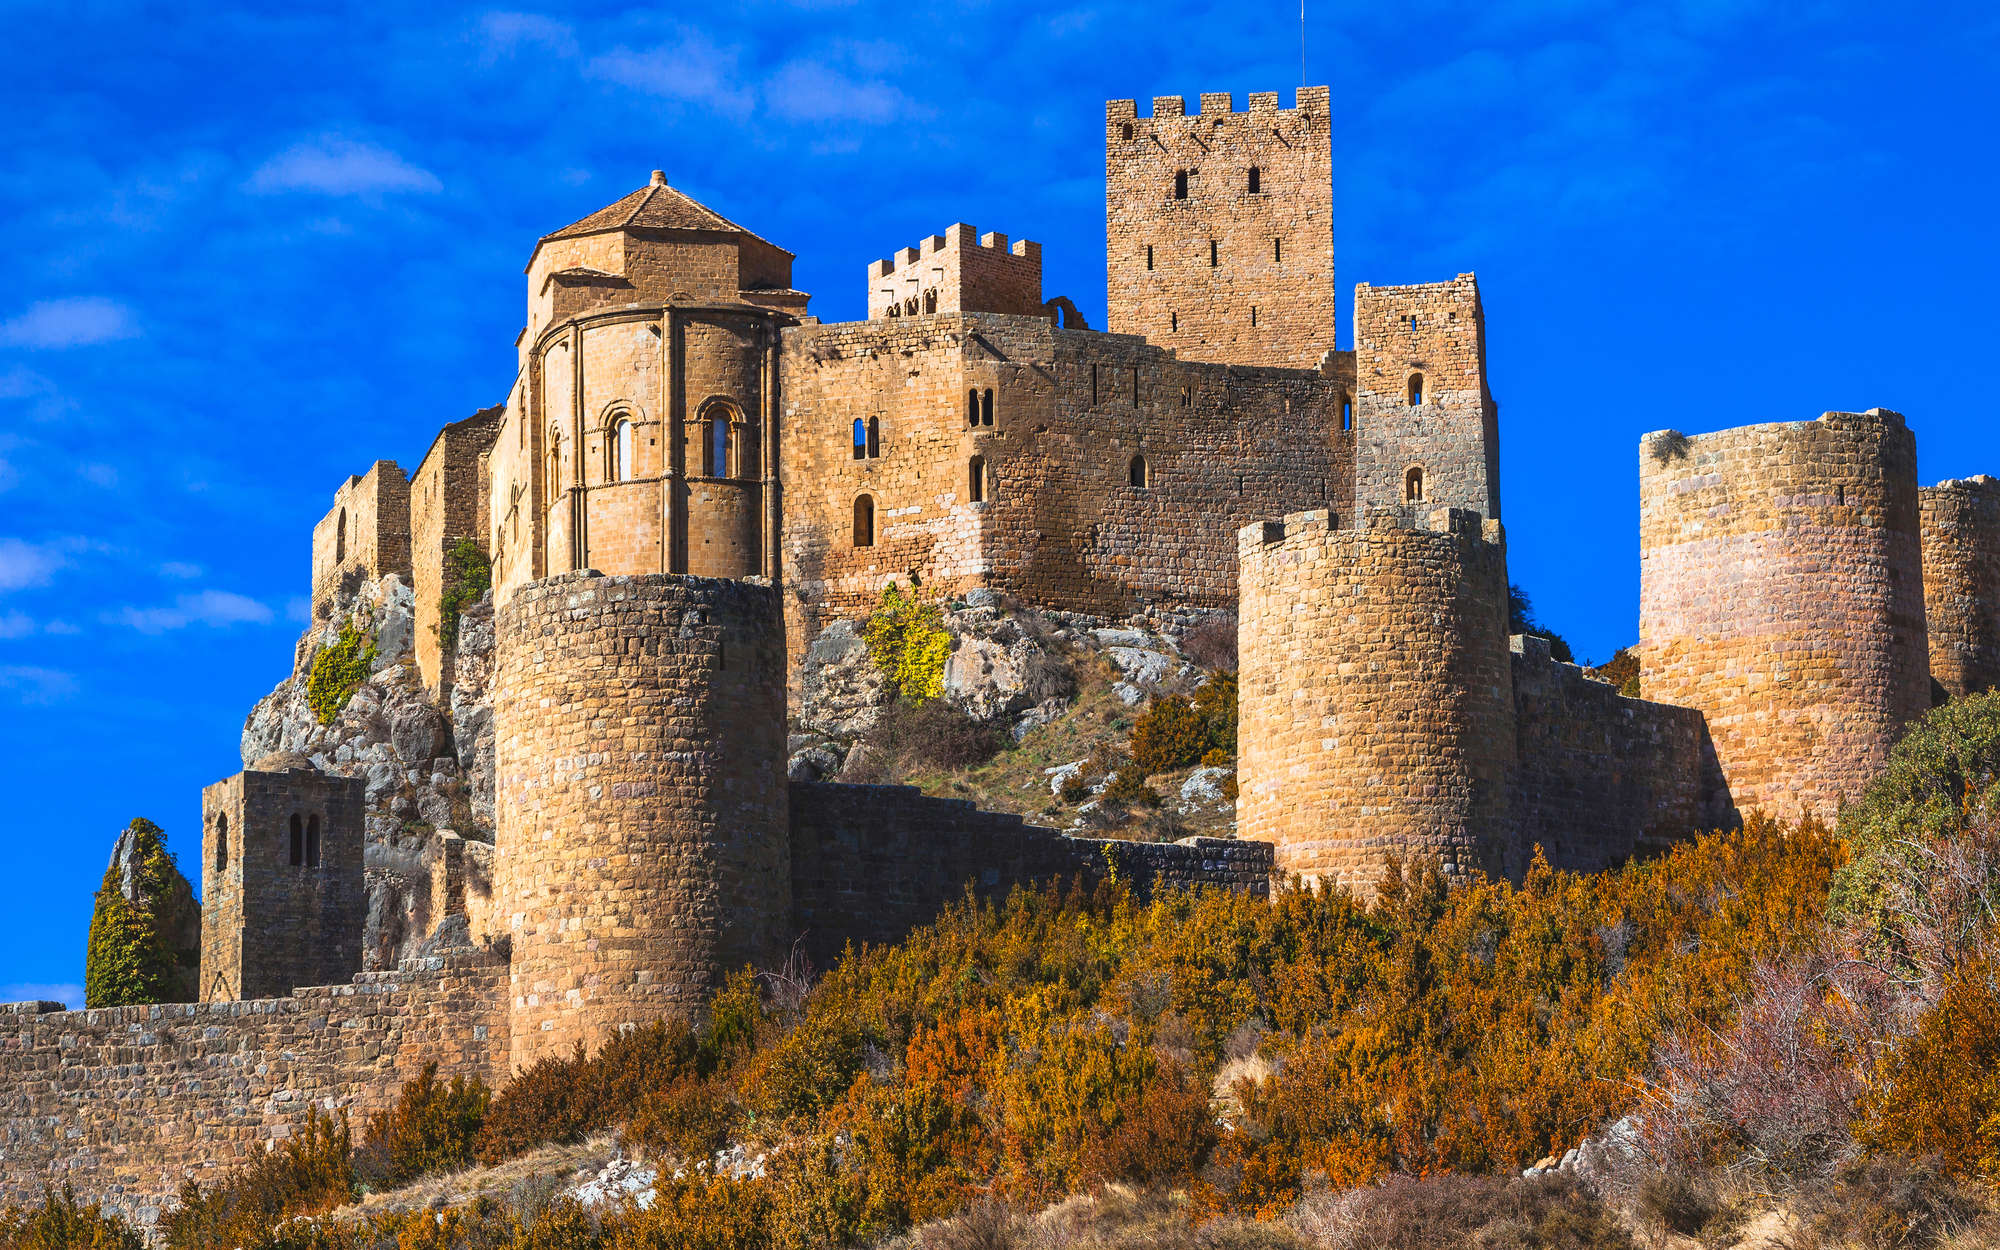             Fototapete Antike Burg mit Steinmauer – Mattes Glattvlies
        